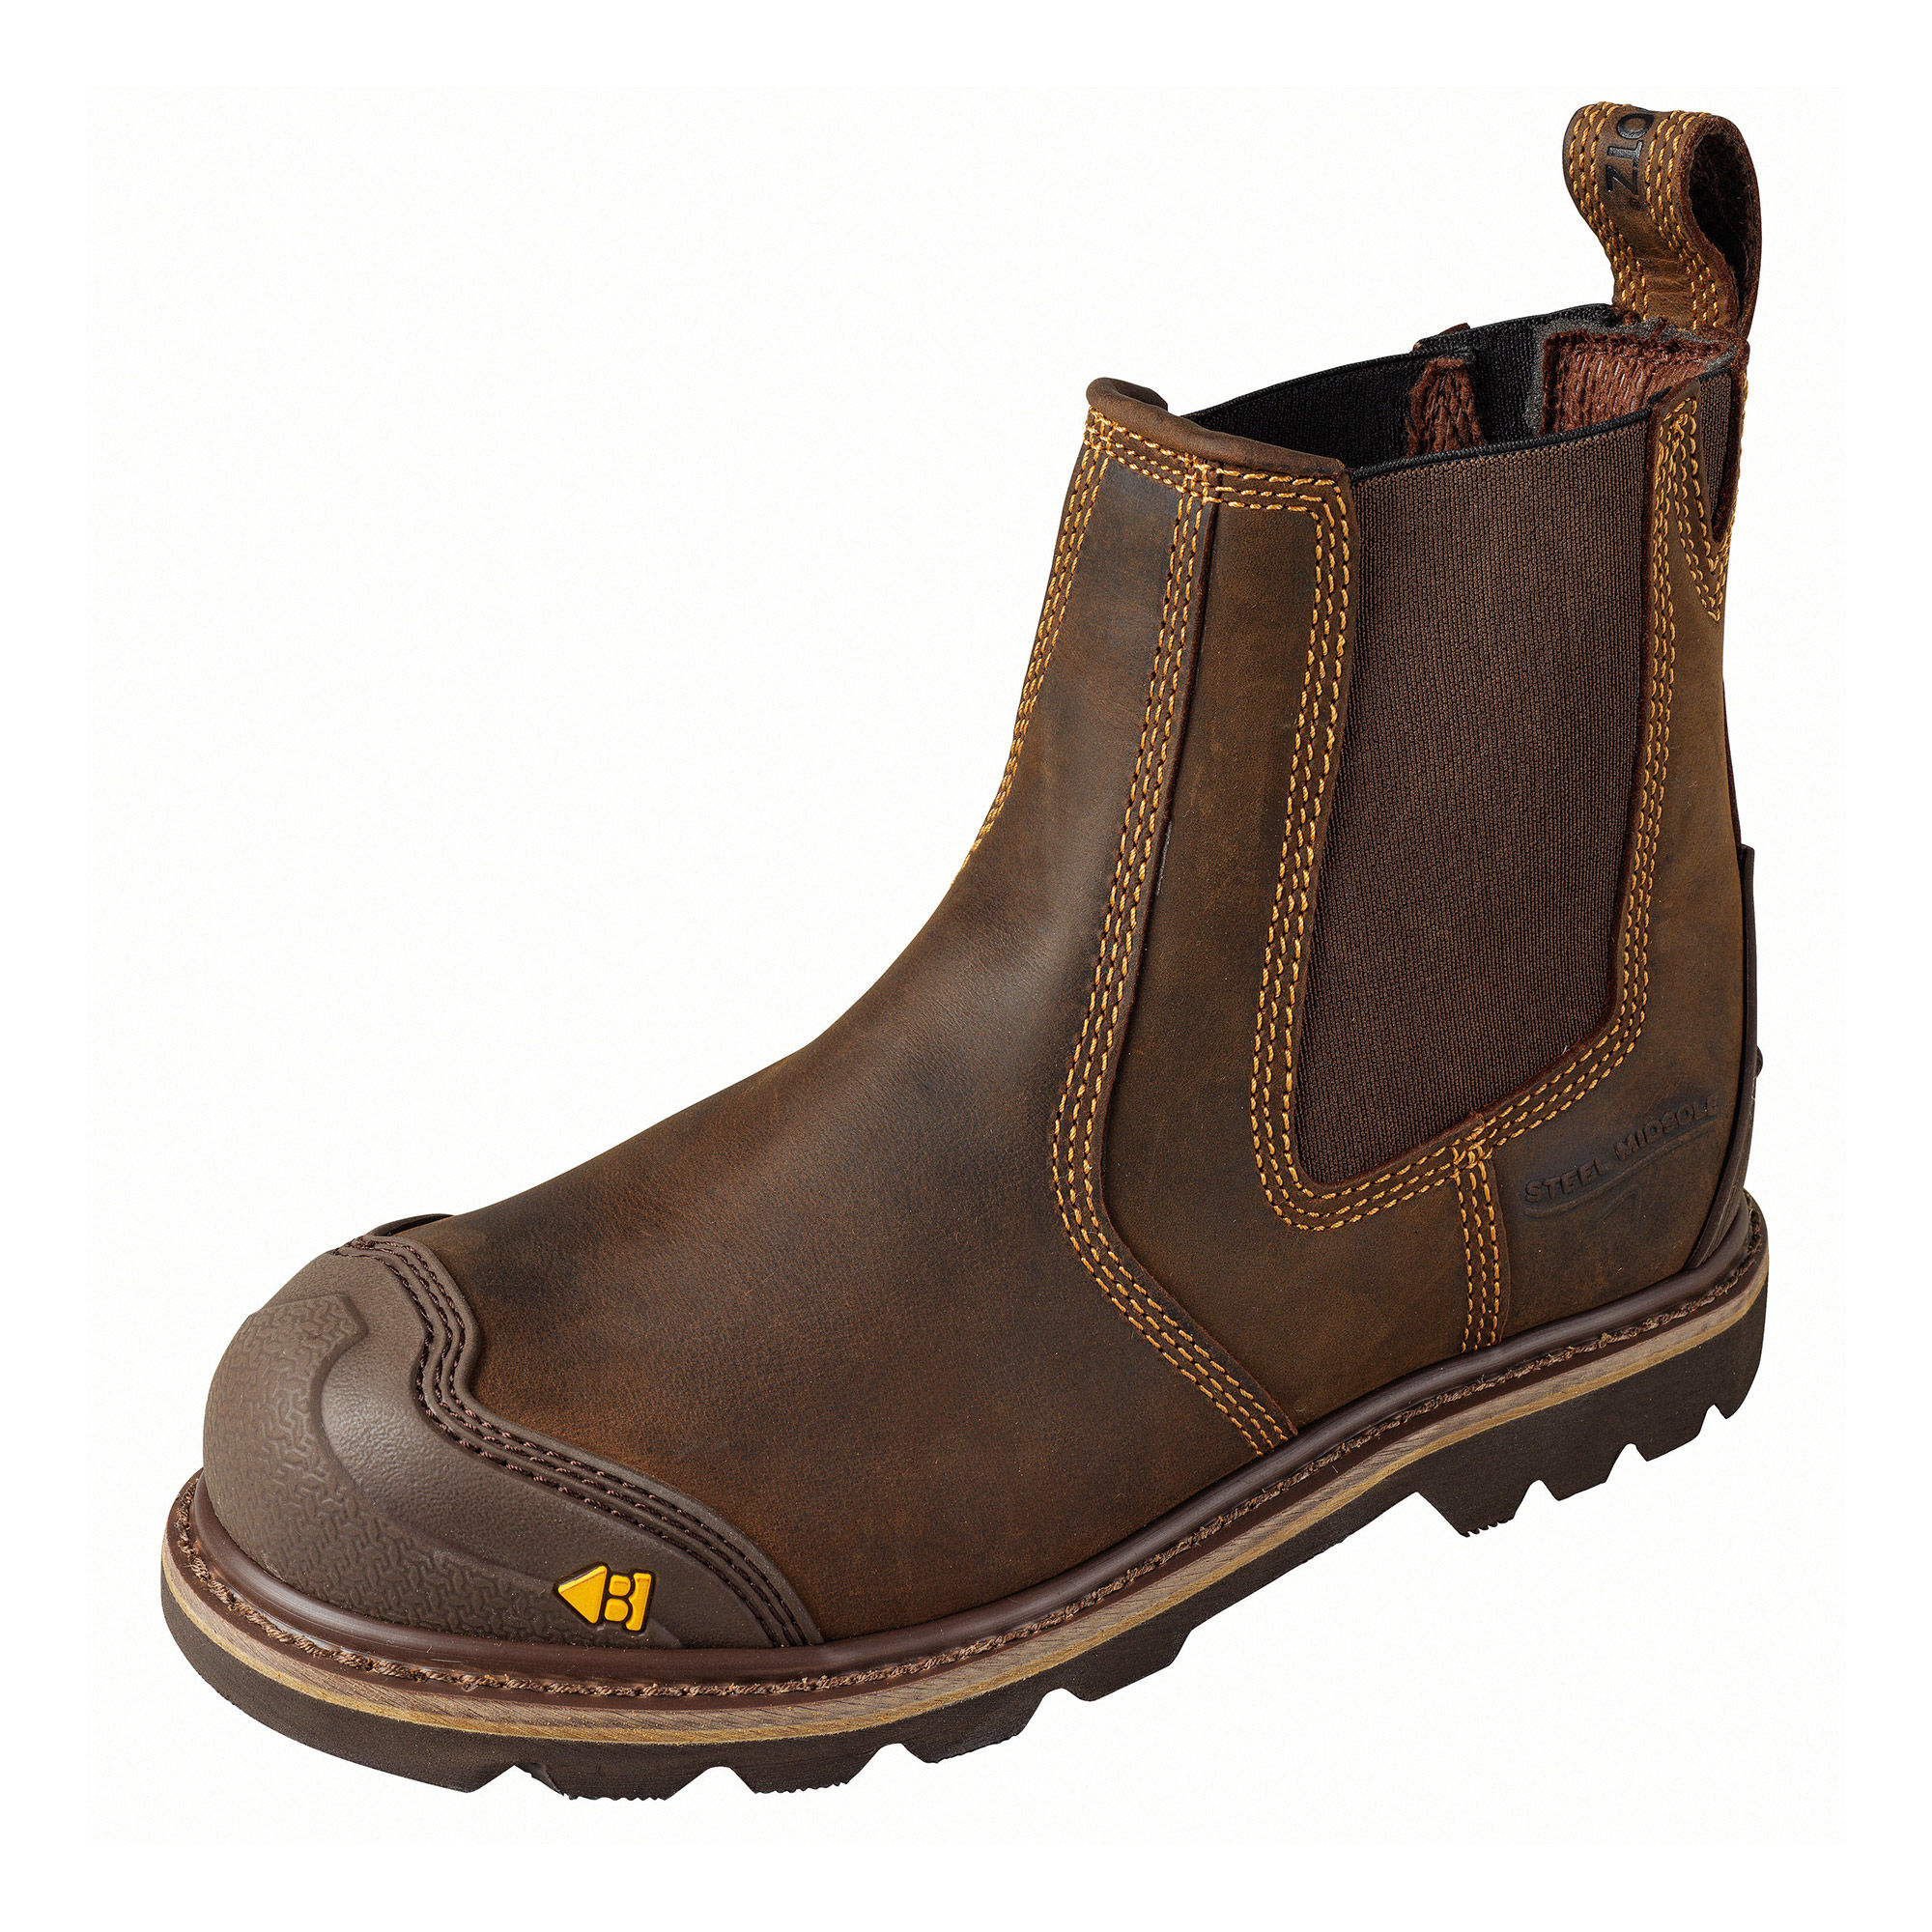 Buckler Buckflex Goodyear Welted Safety Dealer Boots Dark Brown - B1990SM